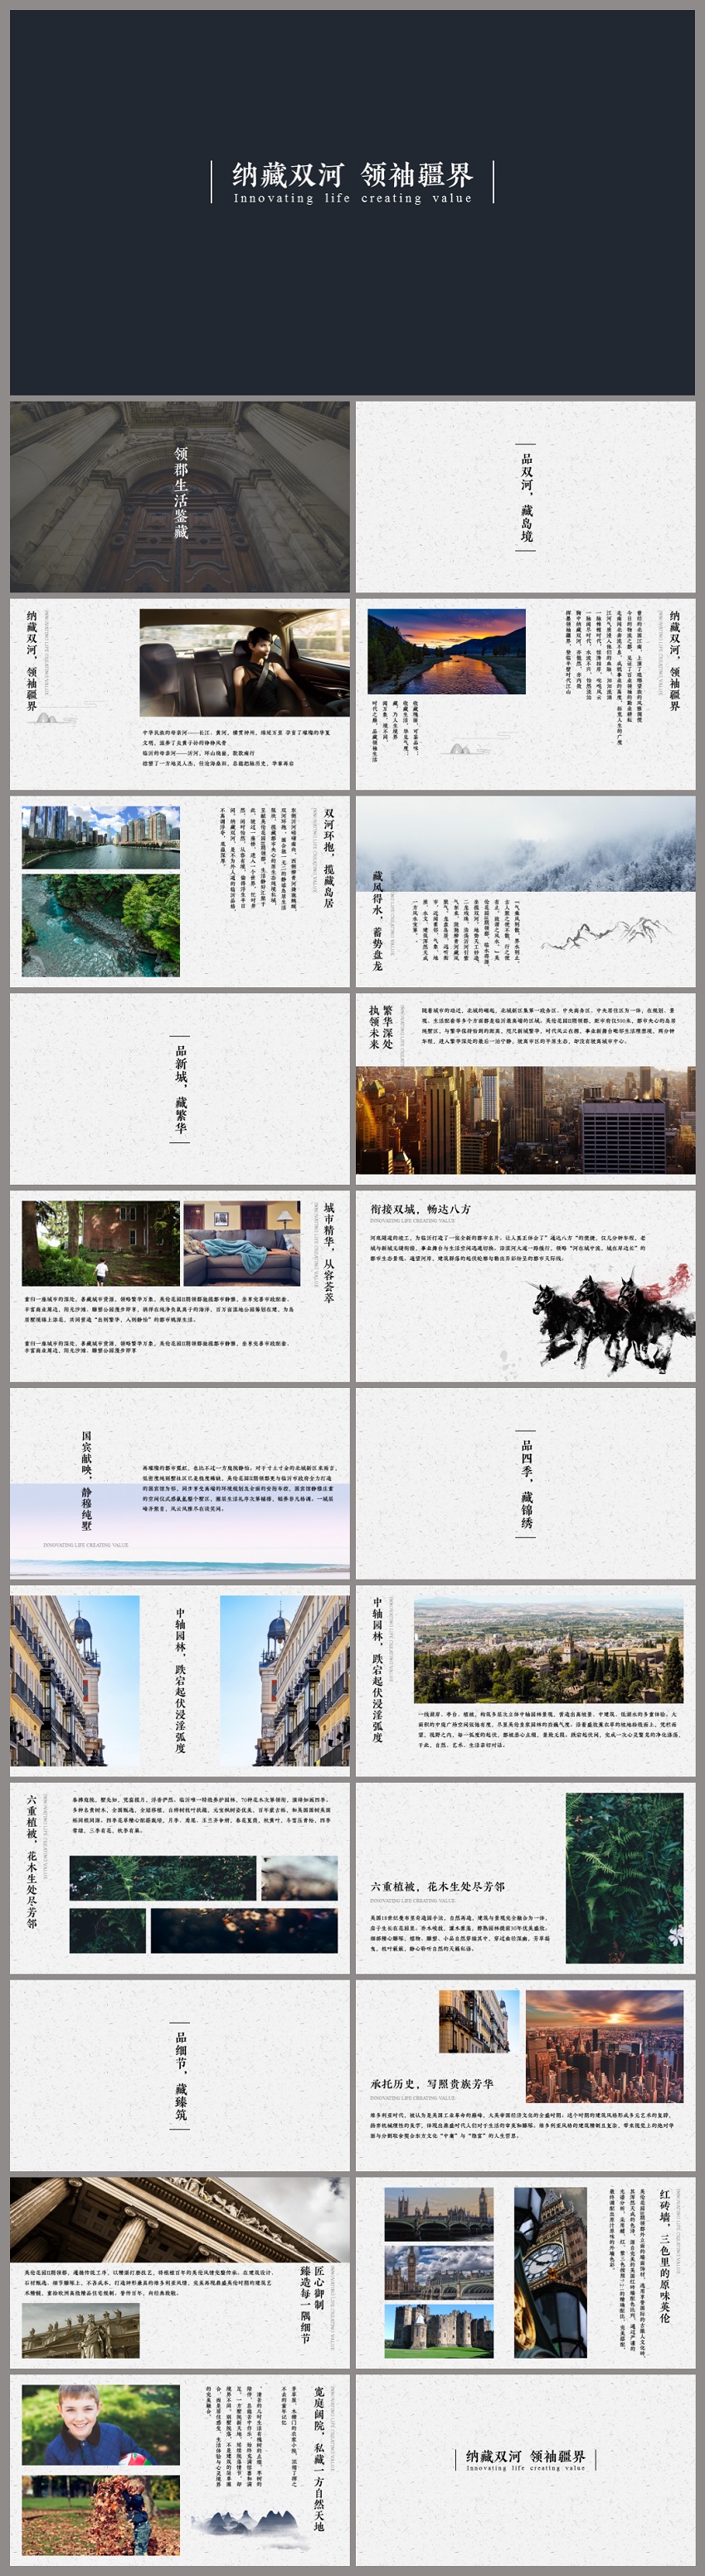 中国风优雅房地产项目介绍展示PPT模板